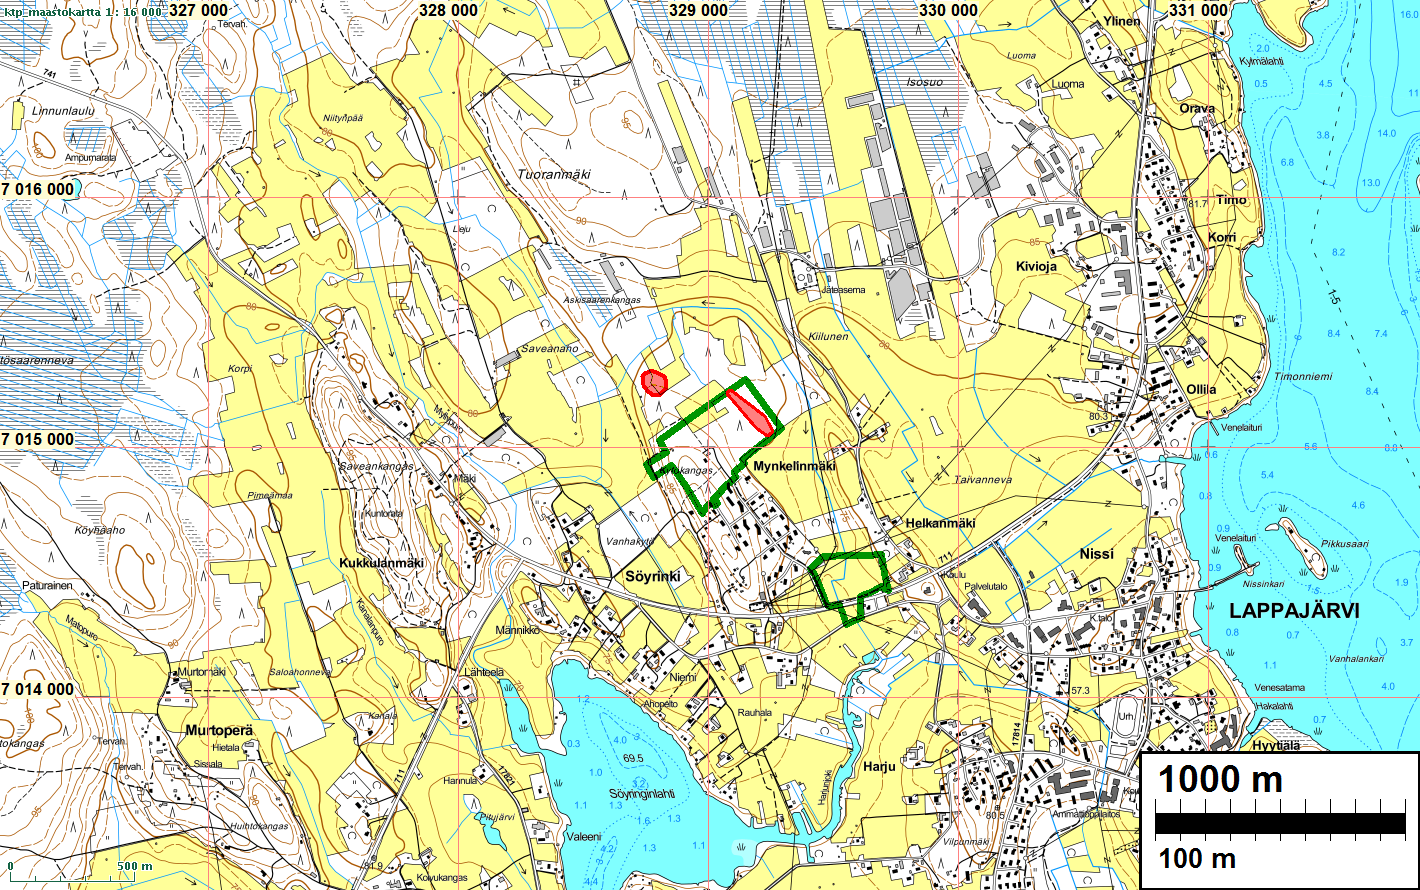 3 Selityksiä: Koordinaatit ja kartat ovat ETRS-TM35FIN koordinaatistossa (Euref). Kartat ovat Maanmittauslaitoksen maastotietokannasta kesällä 2015 ellei toisin mainittu.